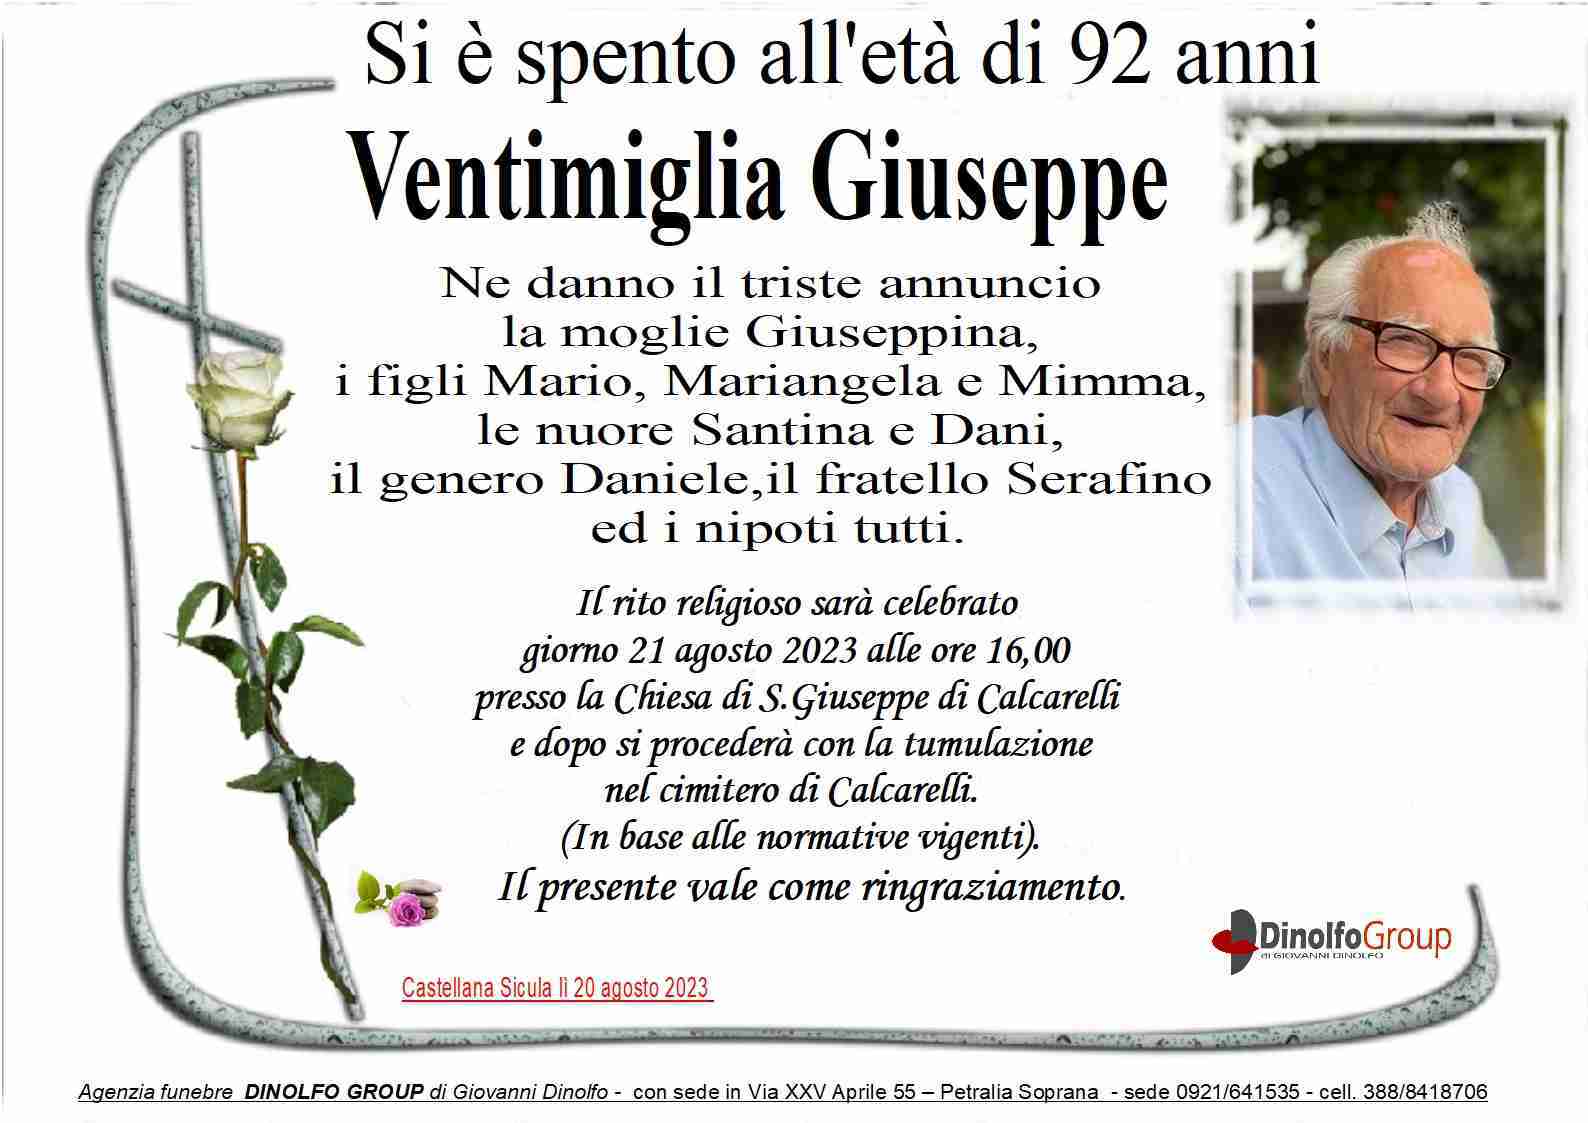 Giuseppe Ventimiglia